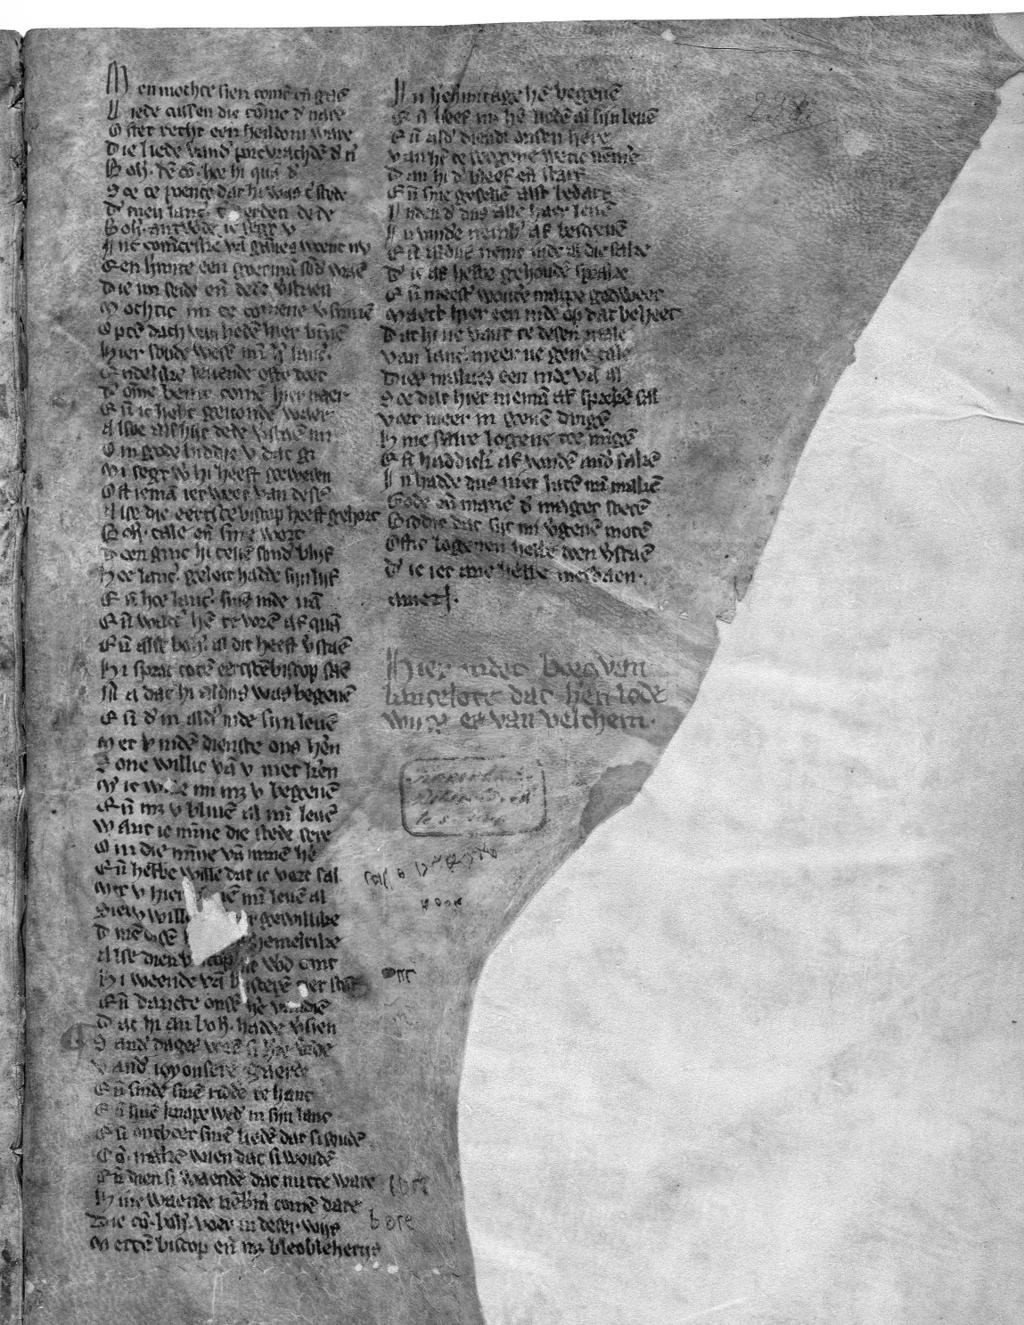 Het laatste blad van de door Velthem samengestelde Lancelotcompilatie (Den Haag, Koninklijke Bibliotheek, hs. 129 A 10, fol. 238r). Velthem, met name zijn Arturromans?